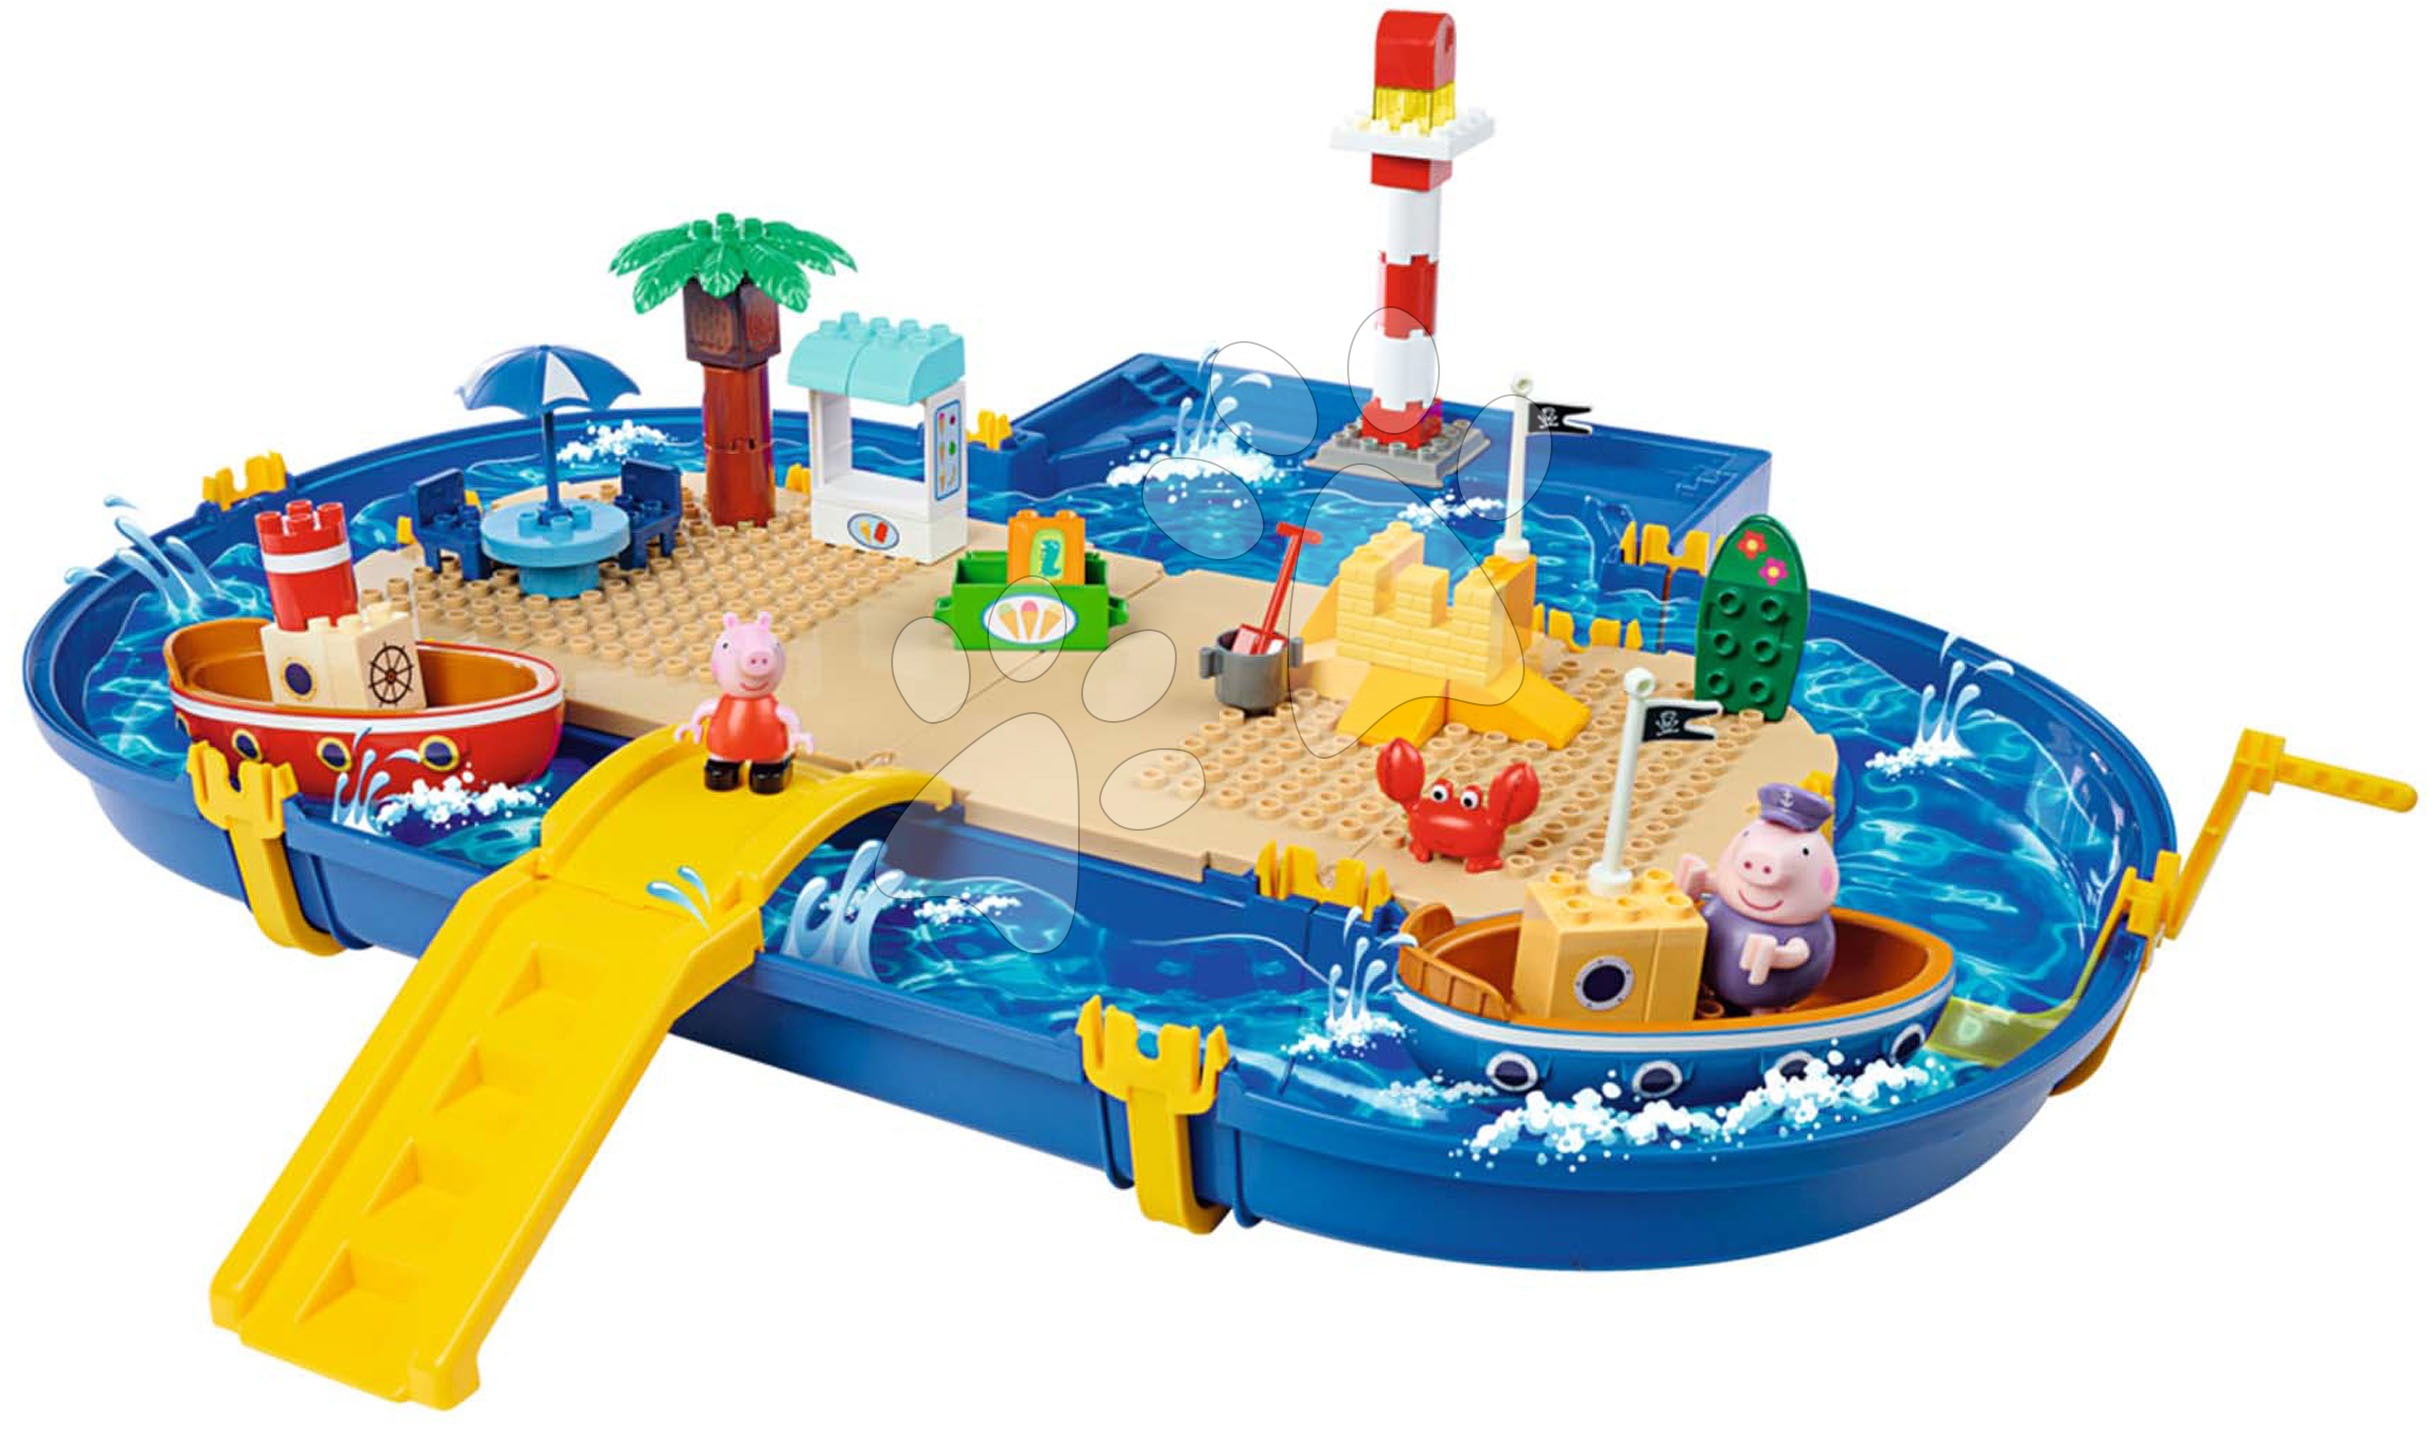 Vodene staze za djecu - Vodena staza Peppa Pig Holiday Waterplay Big s 2 brodića i 3 figurice i 71 dio - kompatibilno s Duplom